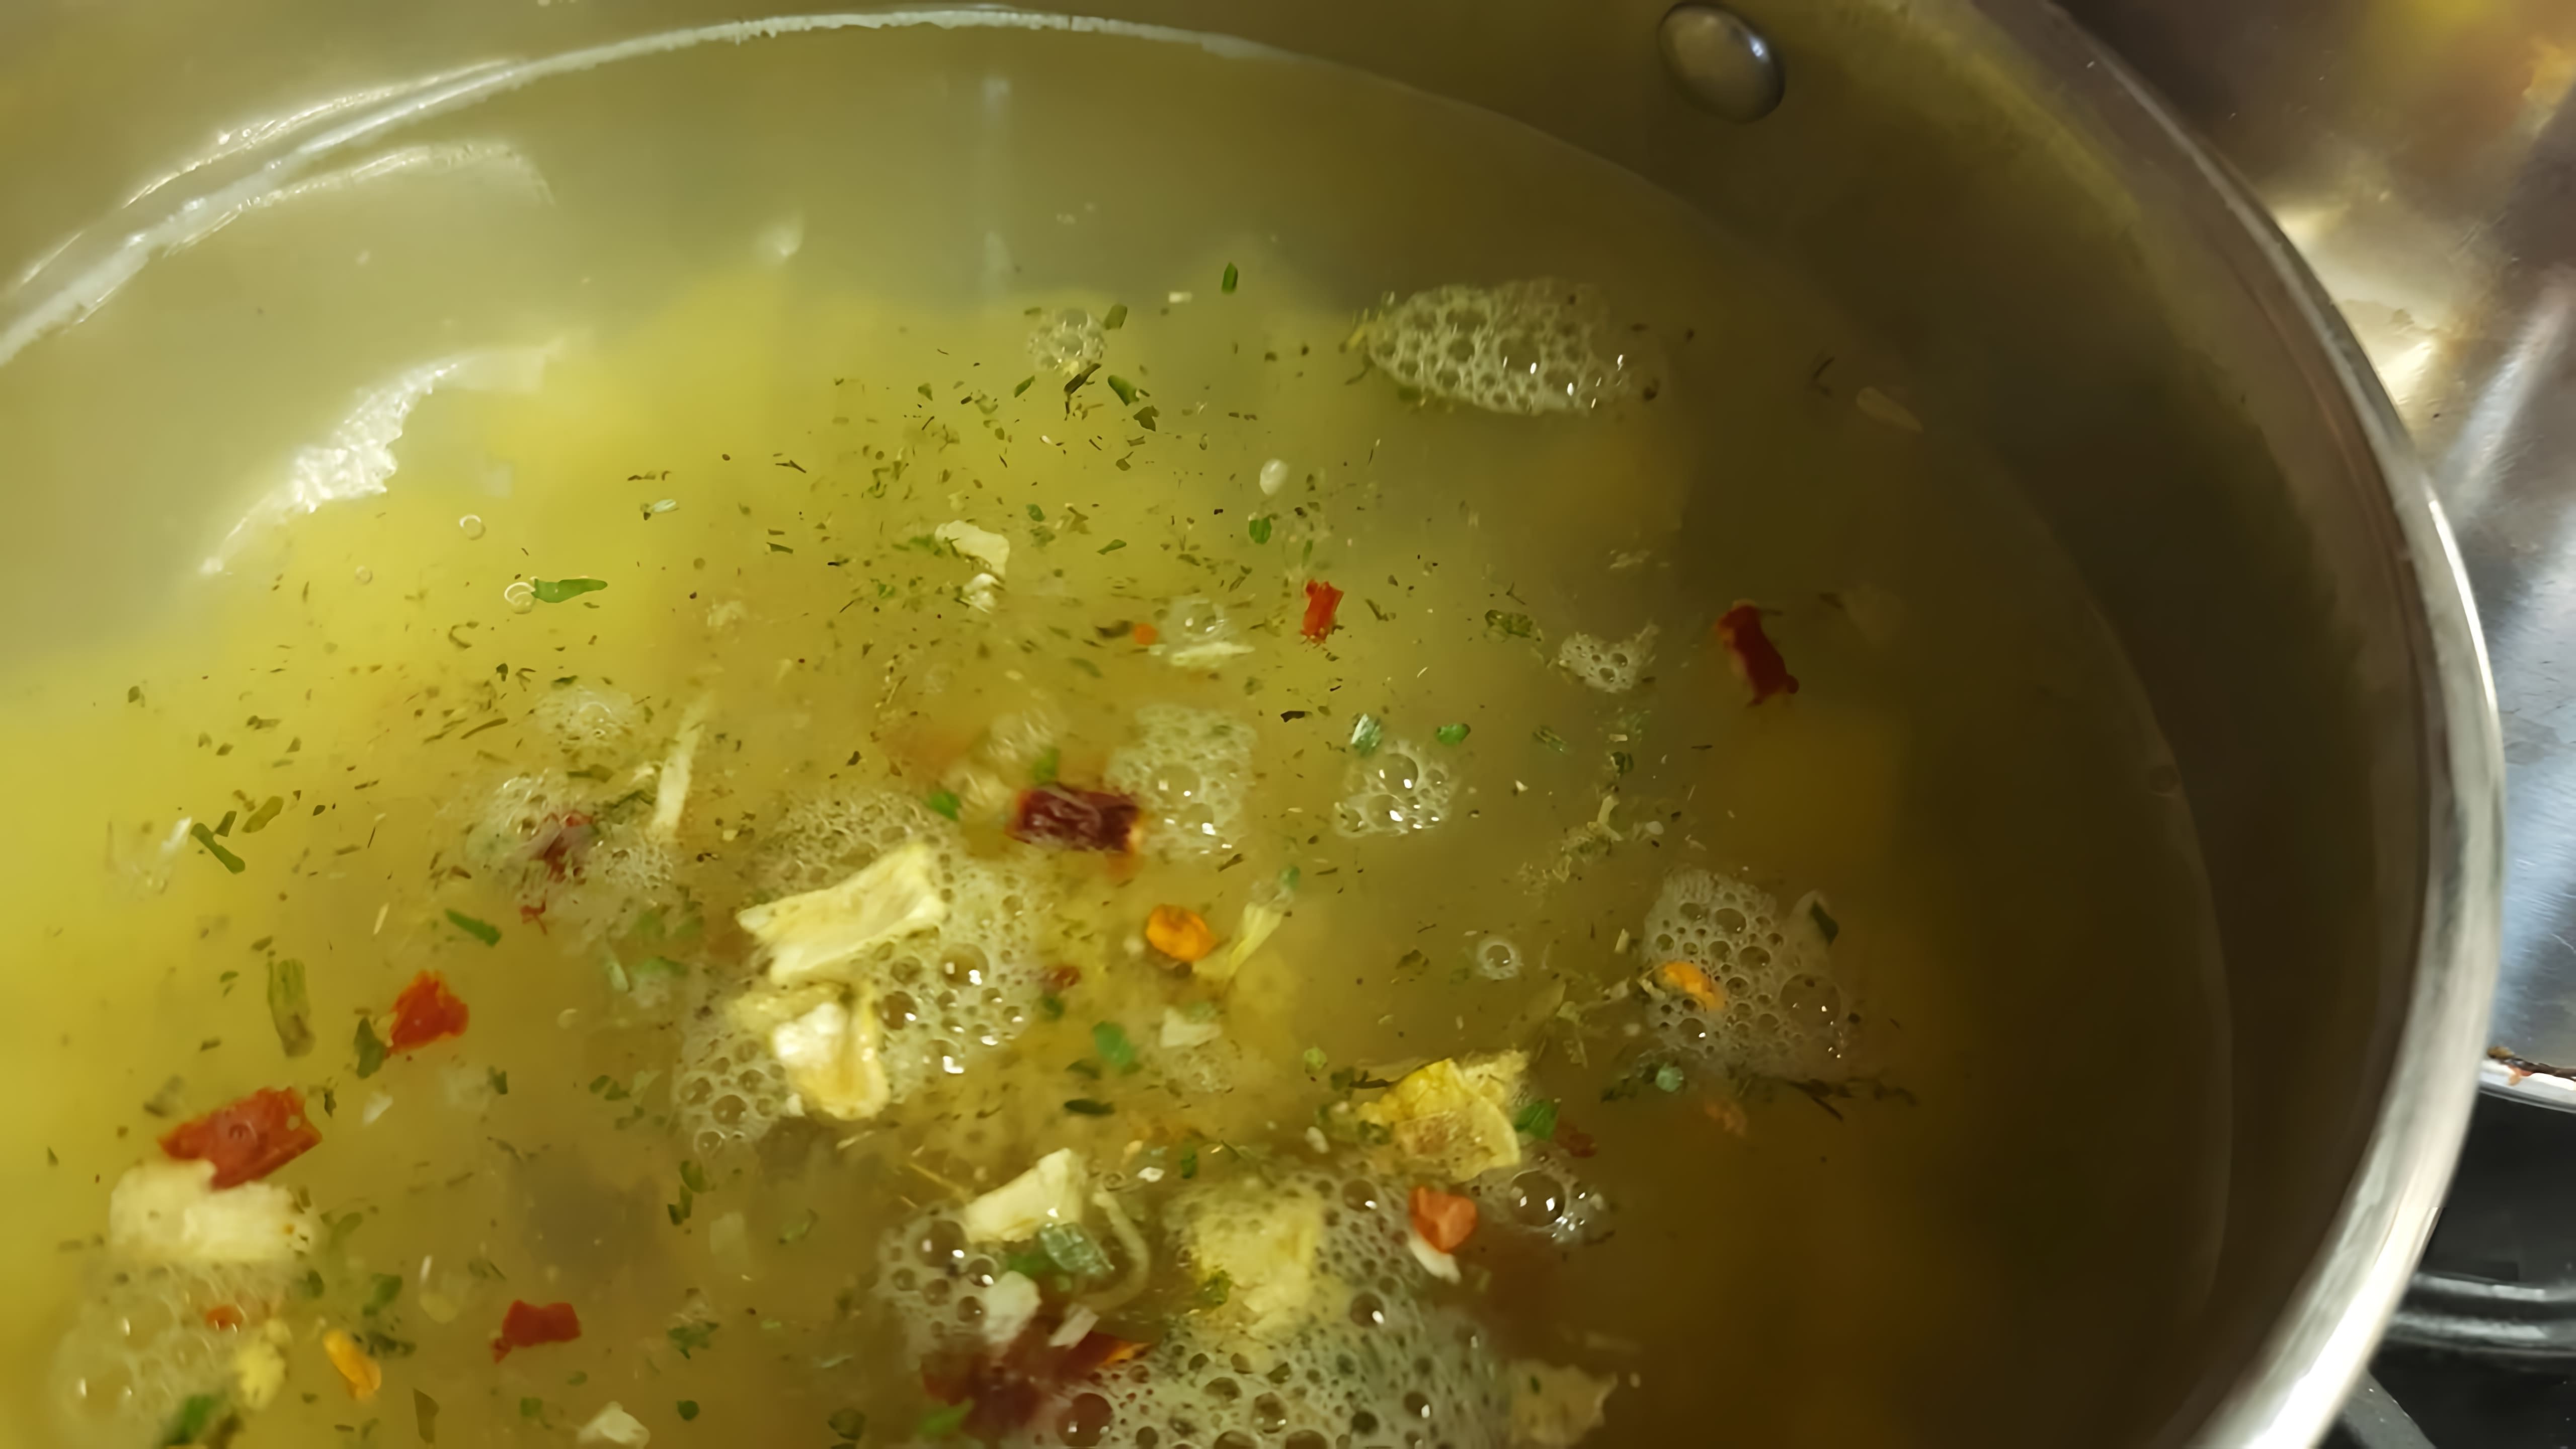 В этом видео-ролике рассказывается о том, как приготовить тот самый суп со звездочками, который многие из нас помнят из своего детства